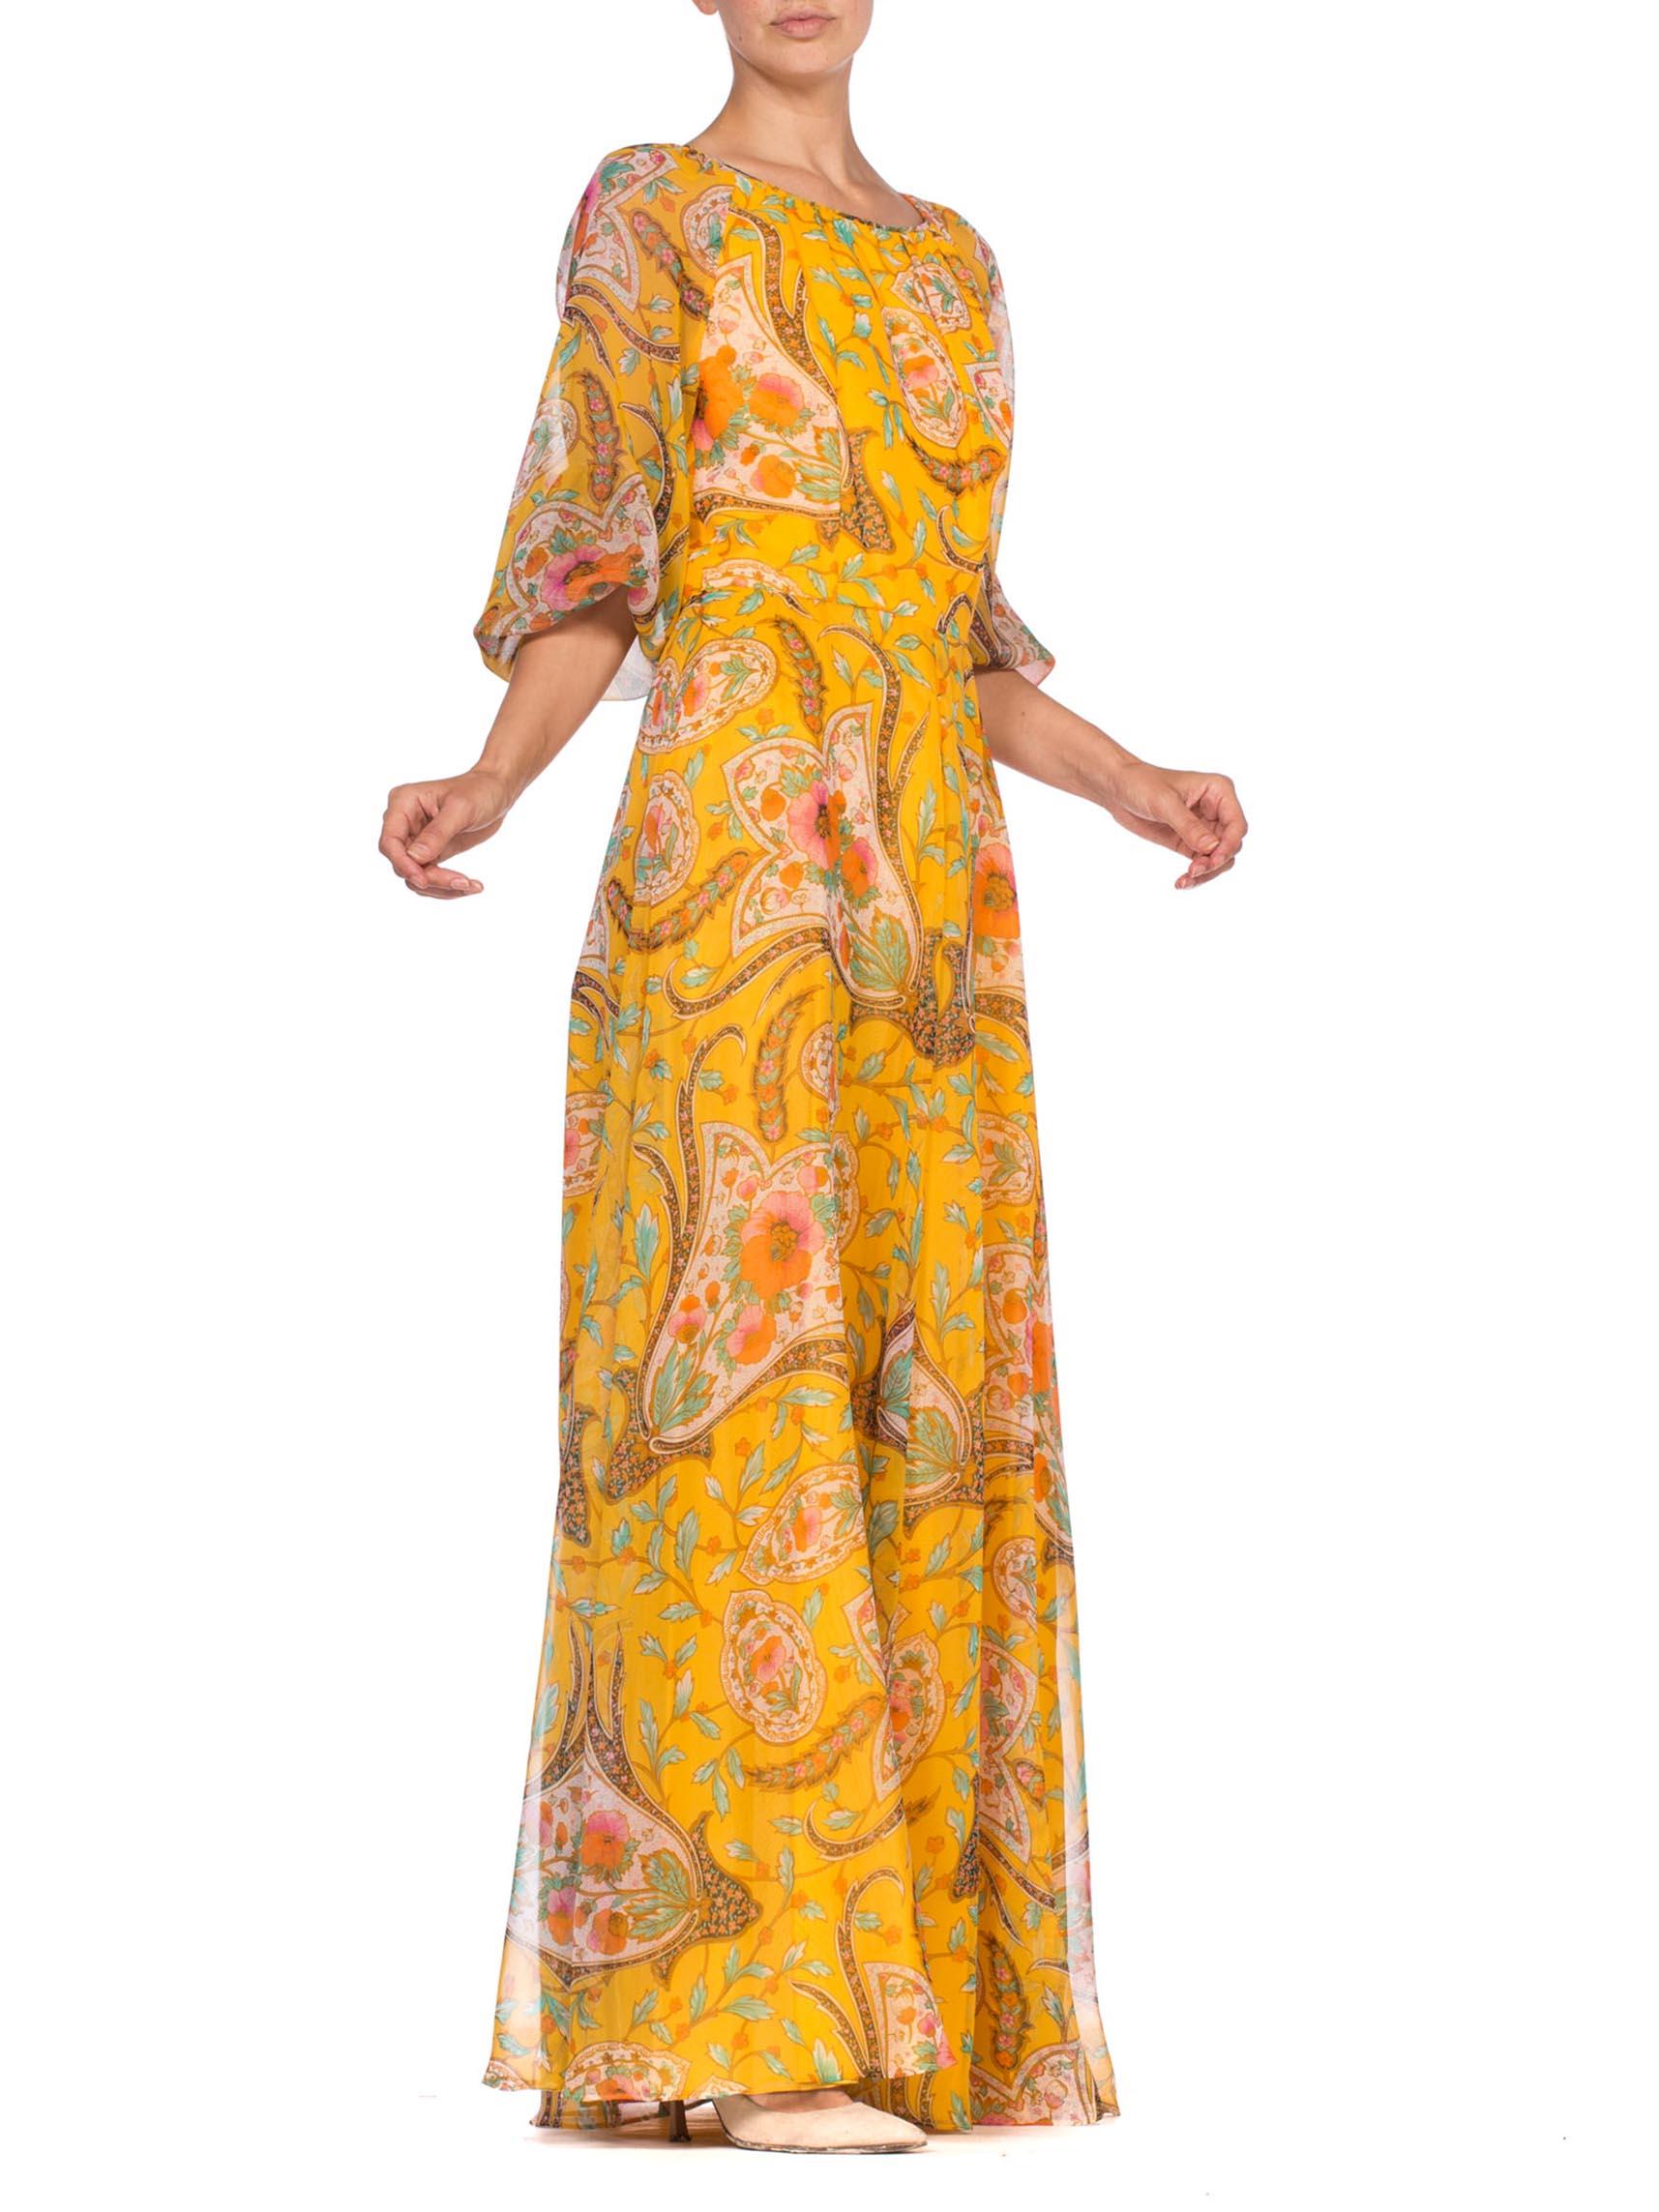 Women's 1970'S Mustard Yellow Poly/Rayon Chiffon Indian Paisley Floral Boho Dress